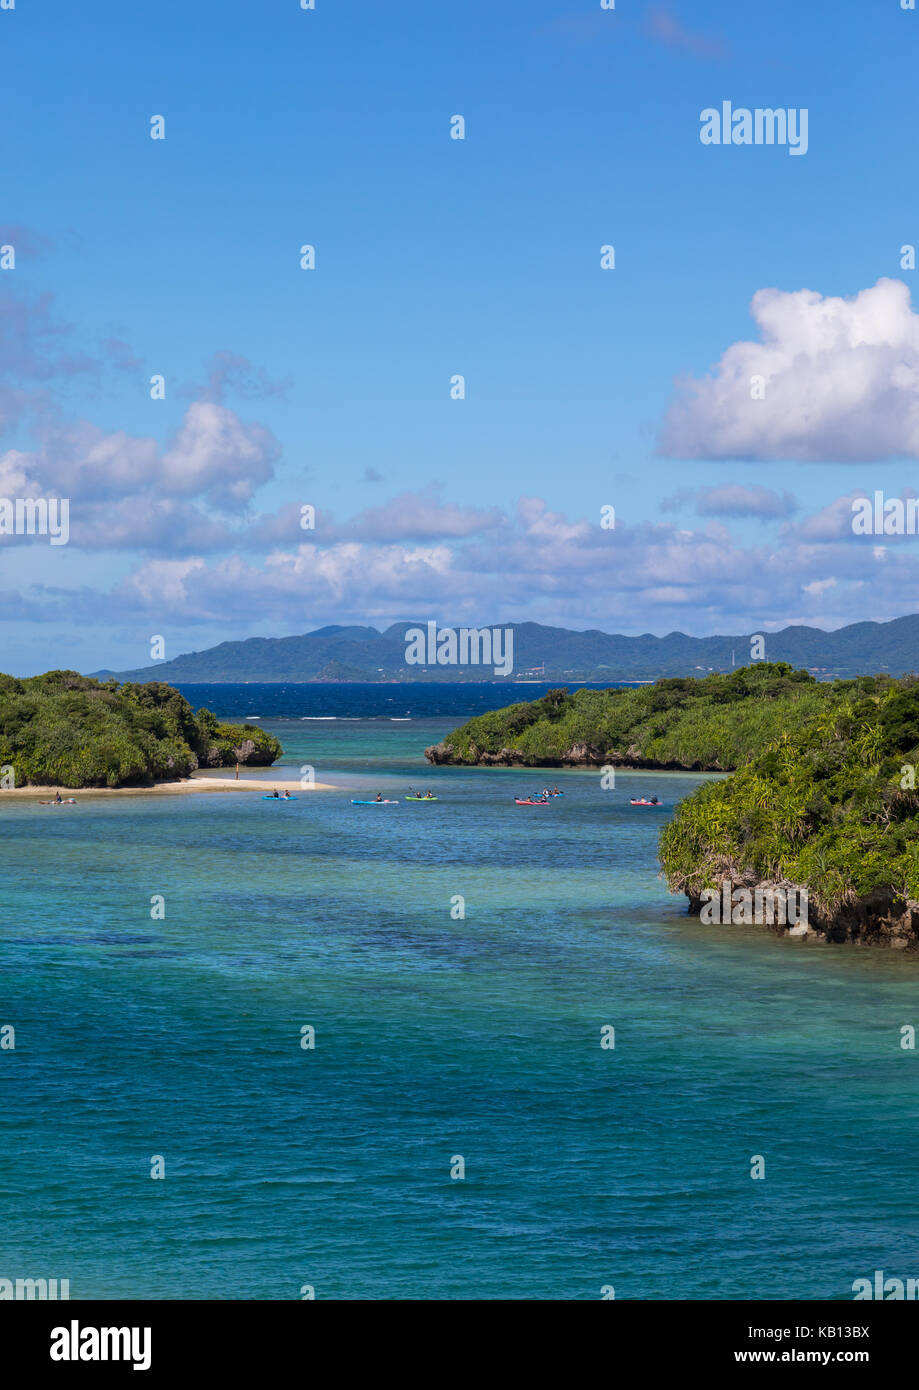 Laguna tropicale con chiare acque blu circondato da lussureggiante vegetazione nella baia di kabira, isole yaeyama, ishigaki, Giappone Foto Stock